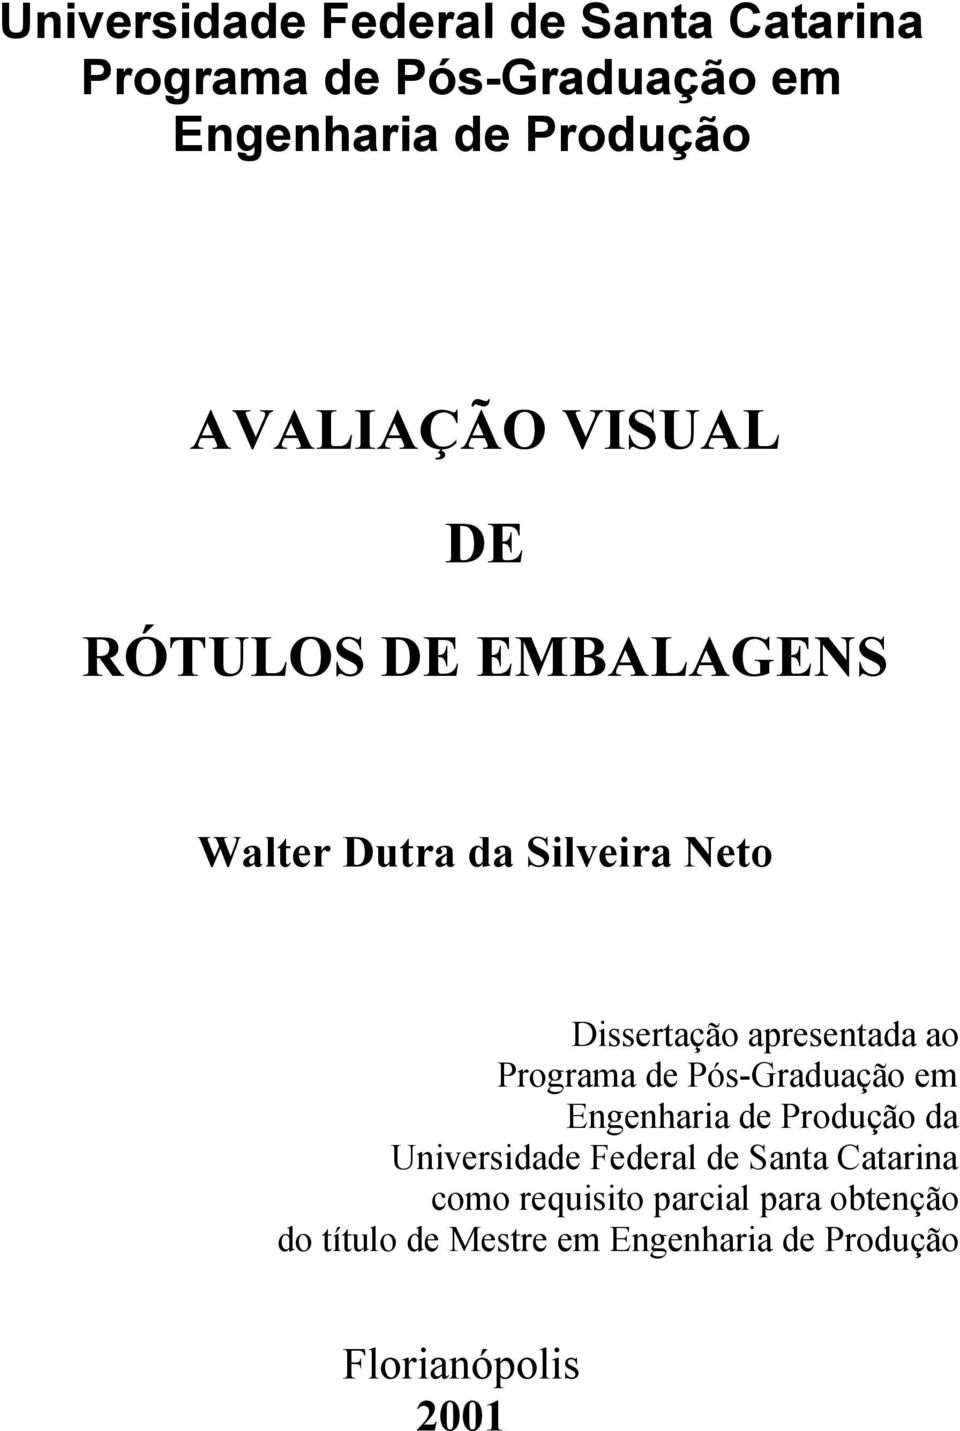 ao Programa de Pós-Graduação em Engenharia de Produção da Universidade Federal de Santa Catarina